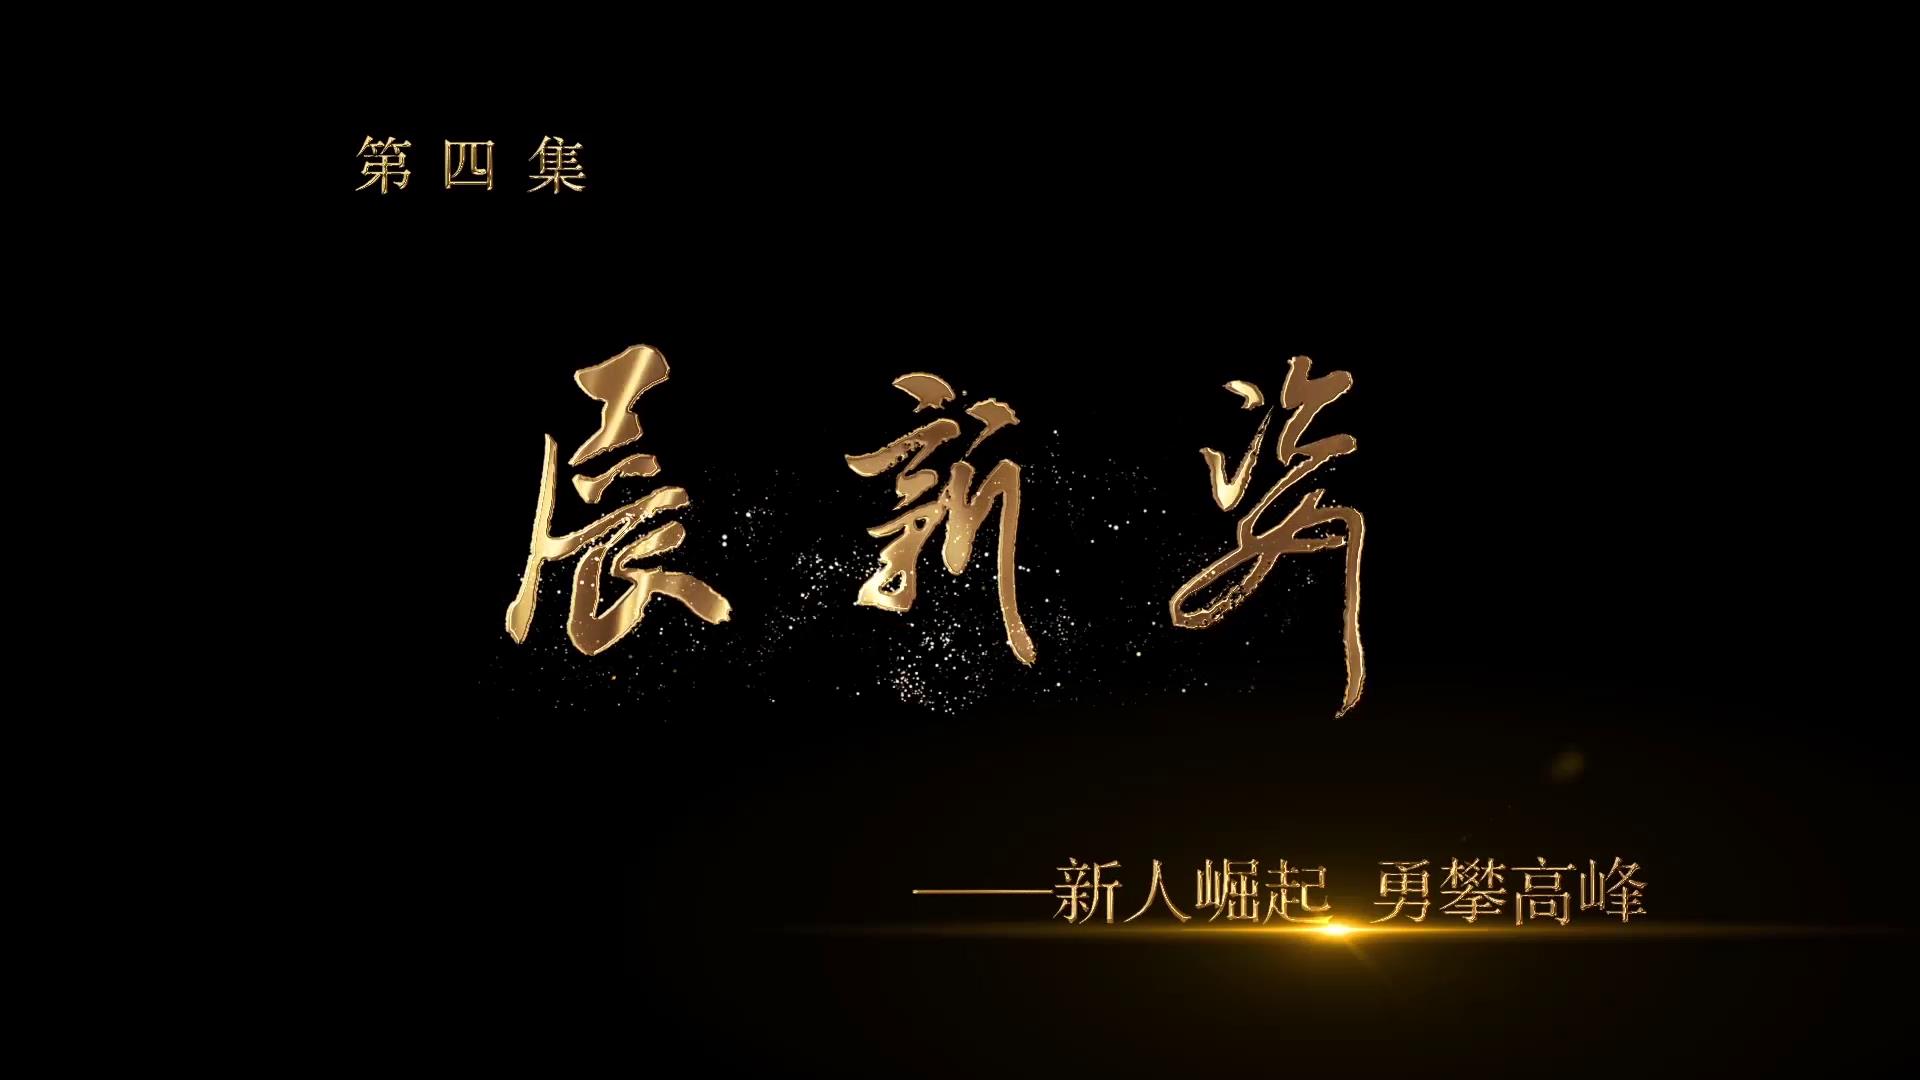 《中国画坛齐鲁风》第四集 展新姿——新人崛起•勇攀高峰